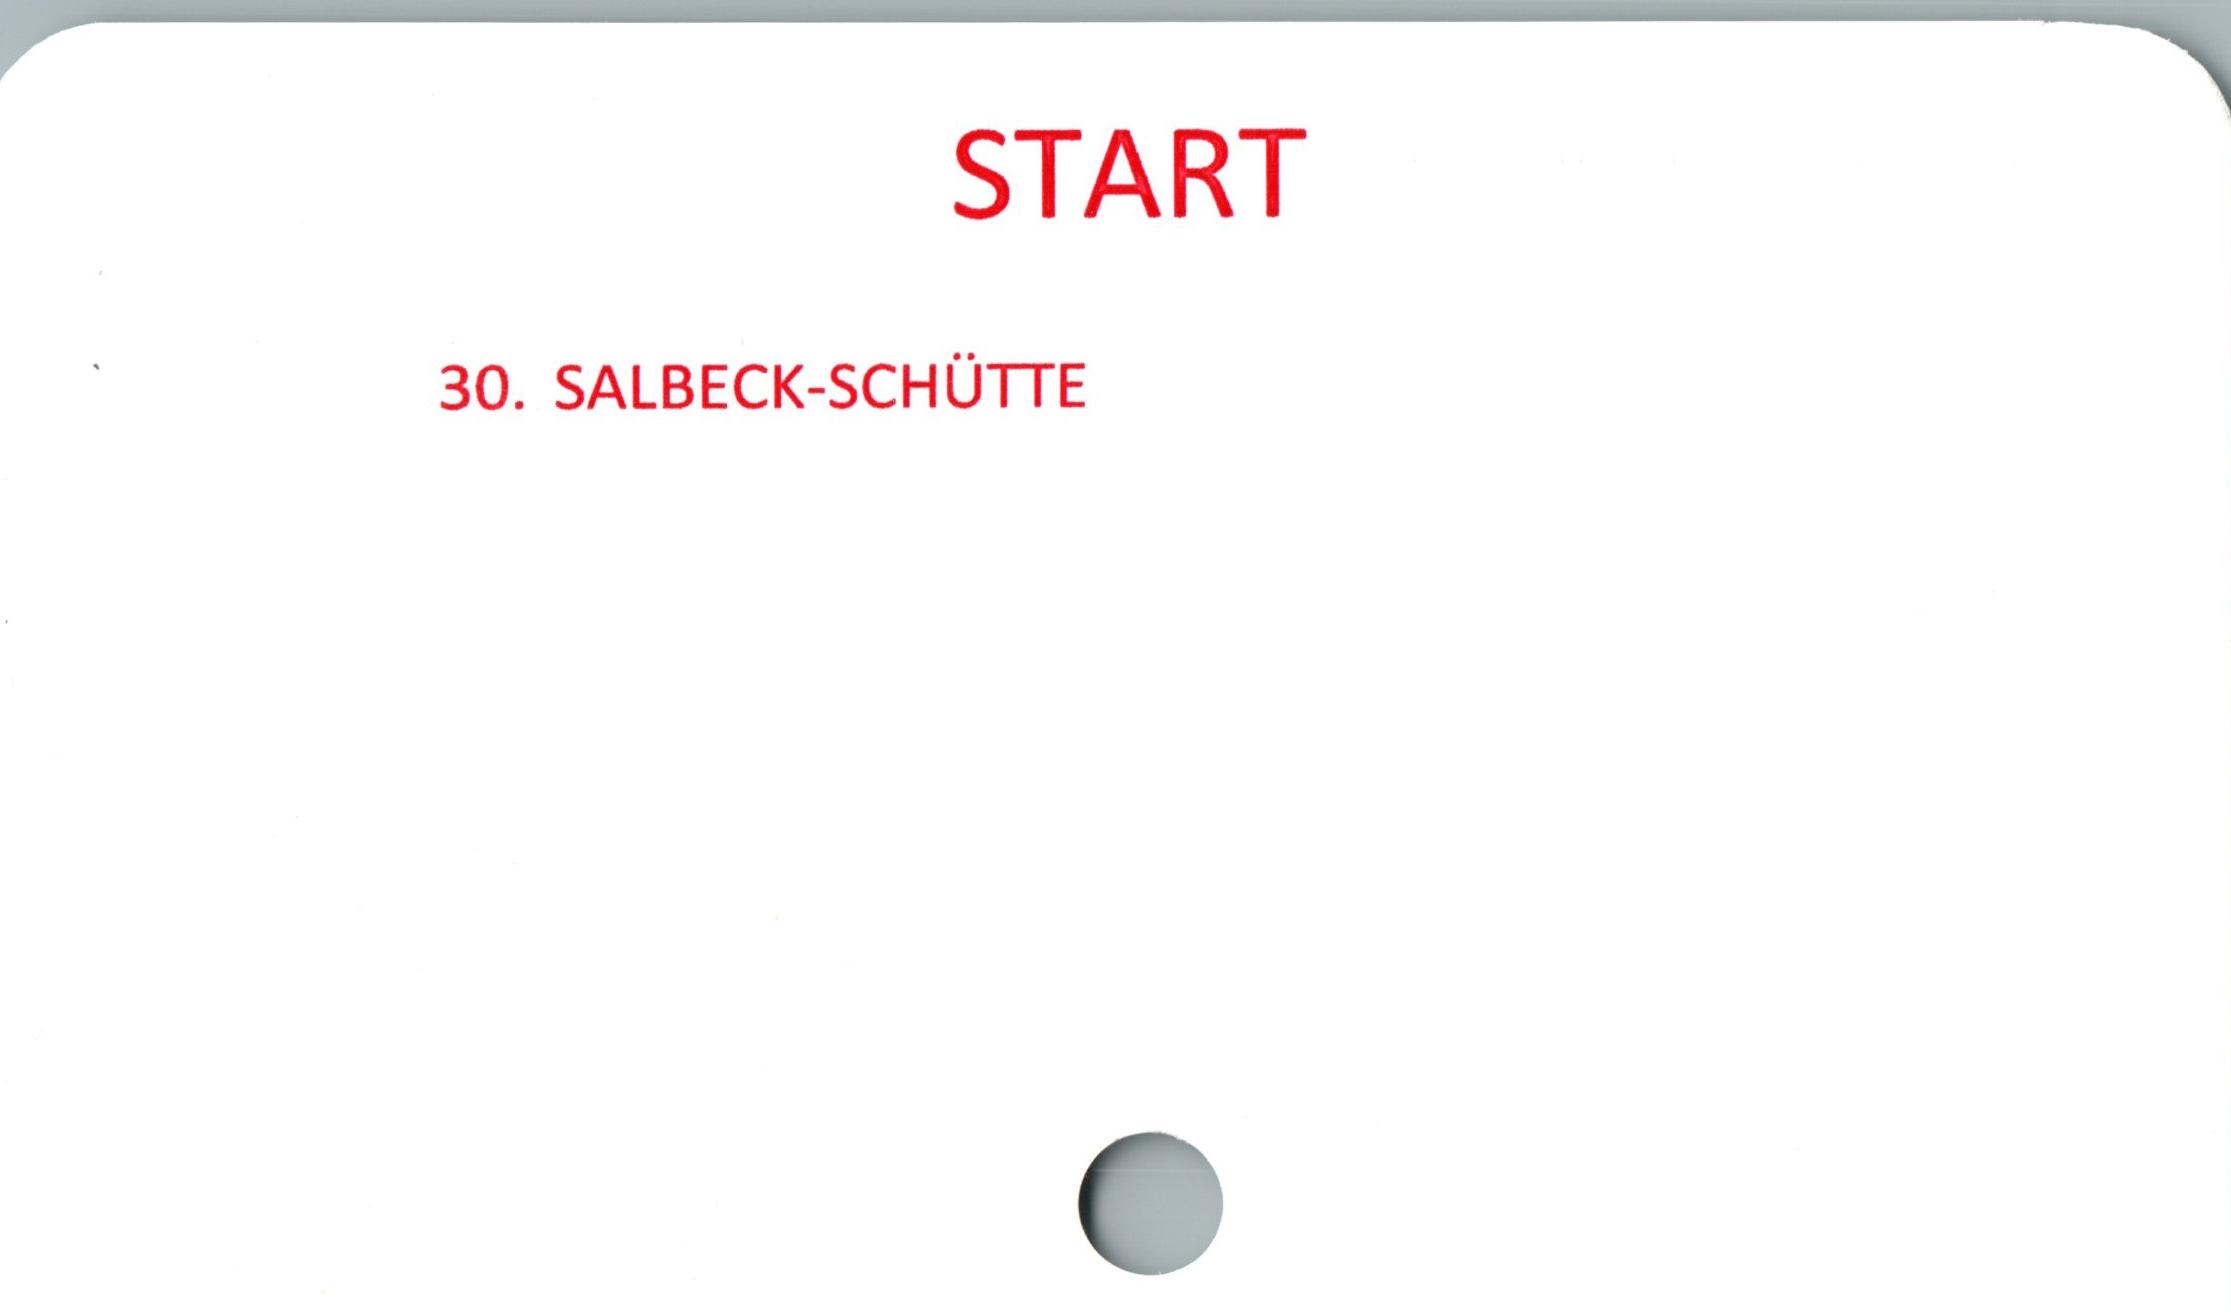  ﻿START

30. SALBECK-SCHUTTE